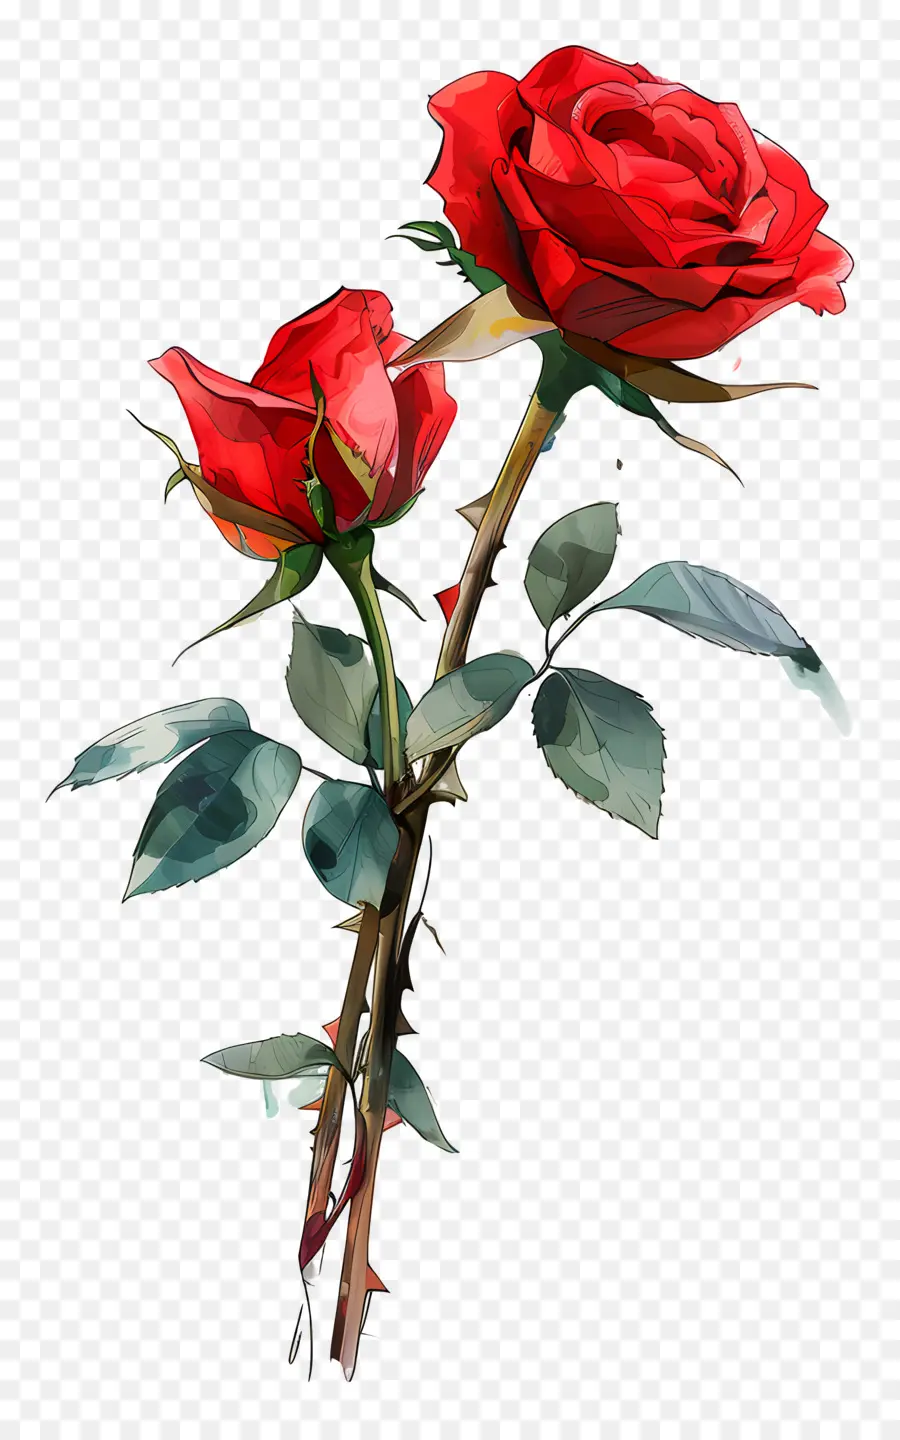 rosa rossa - Elegante rosa rossa con petali chiusi